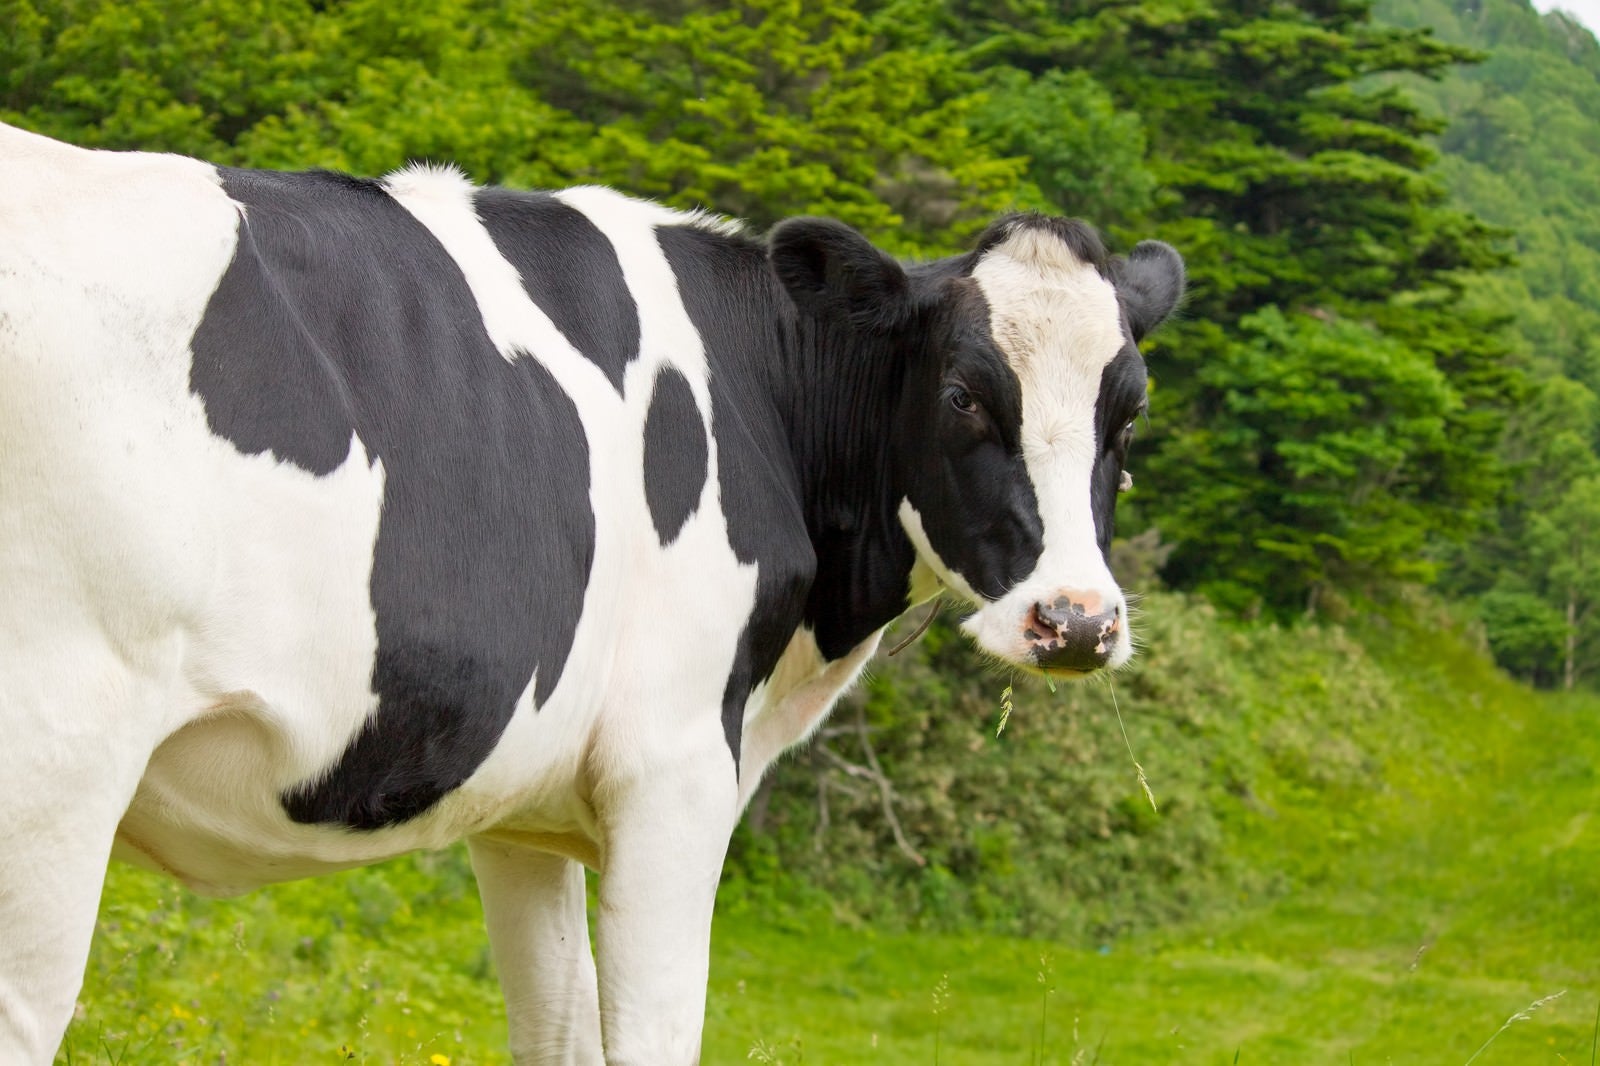 「ムシャムシャする牛さん」の写真